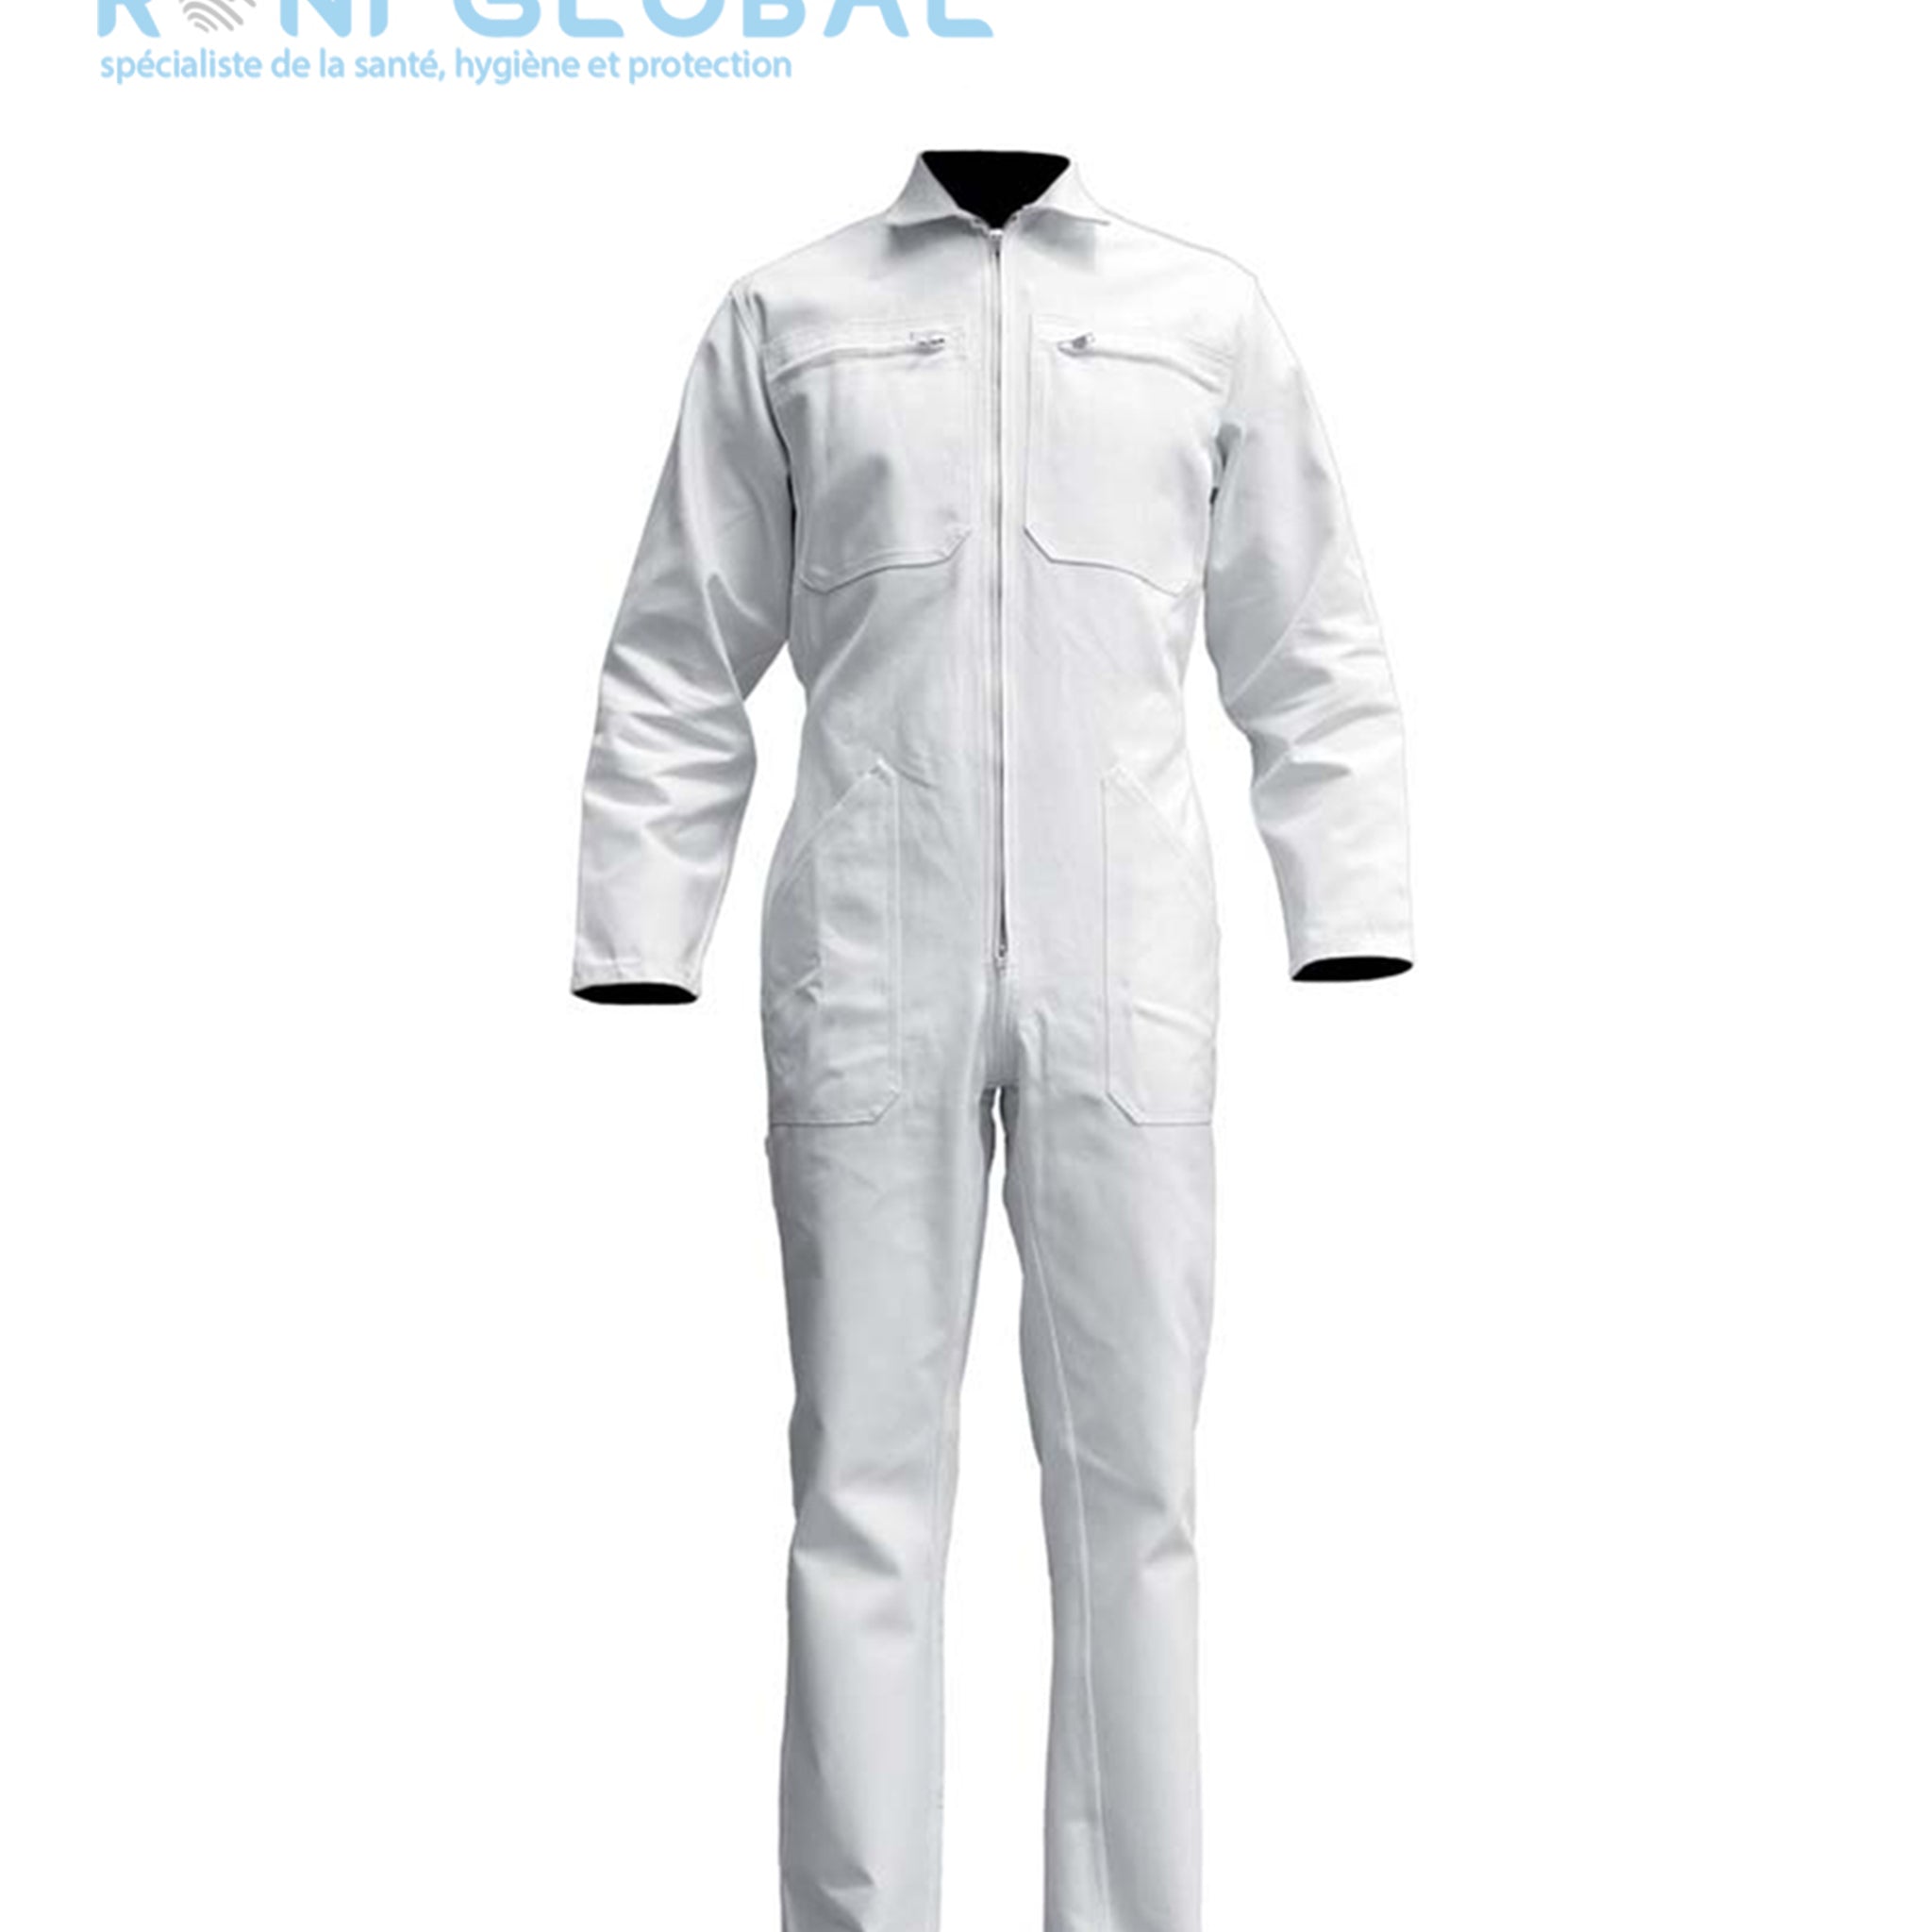 Combinaison de travail blanche en coton 6 poches - COMBINAISON SF COTON BLANC PBV